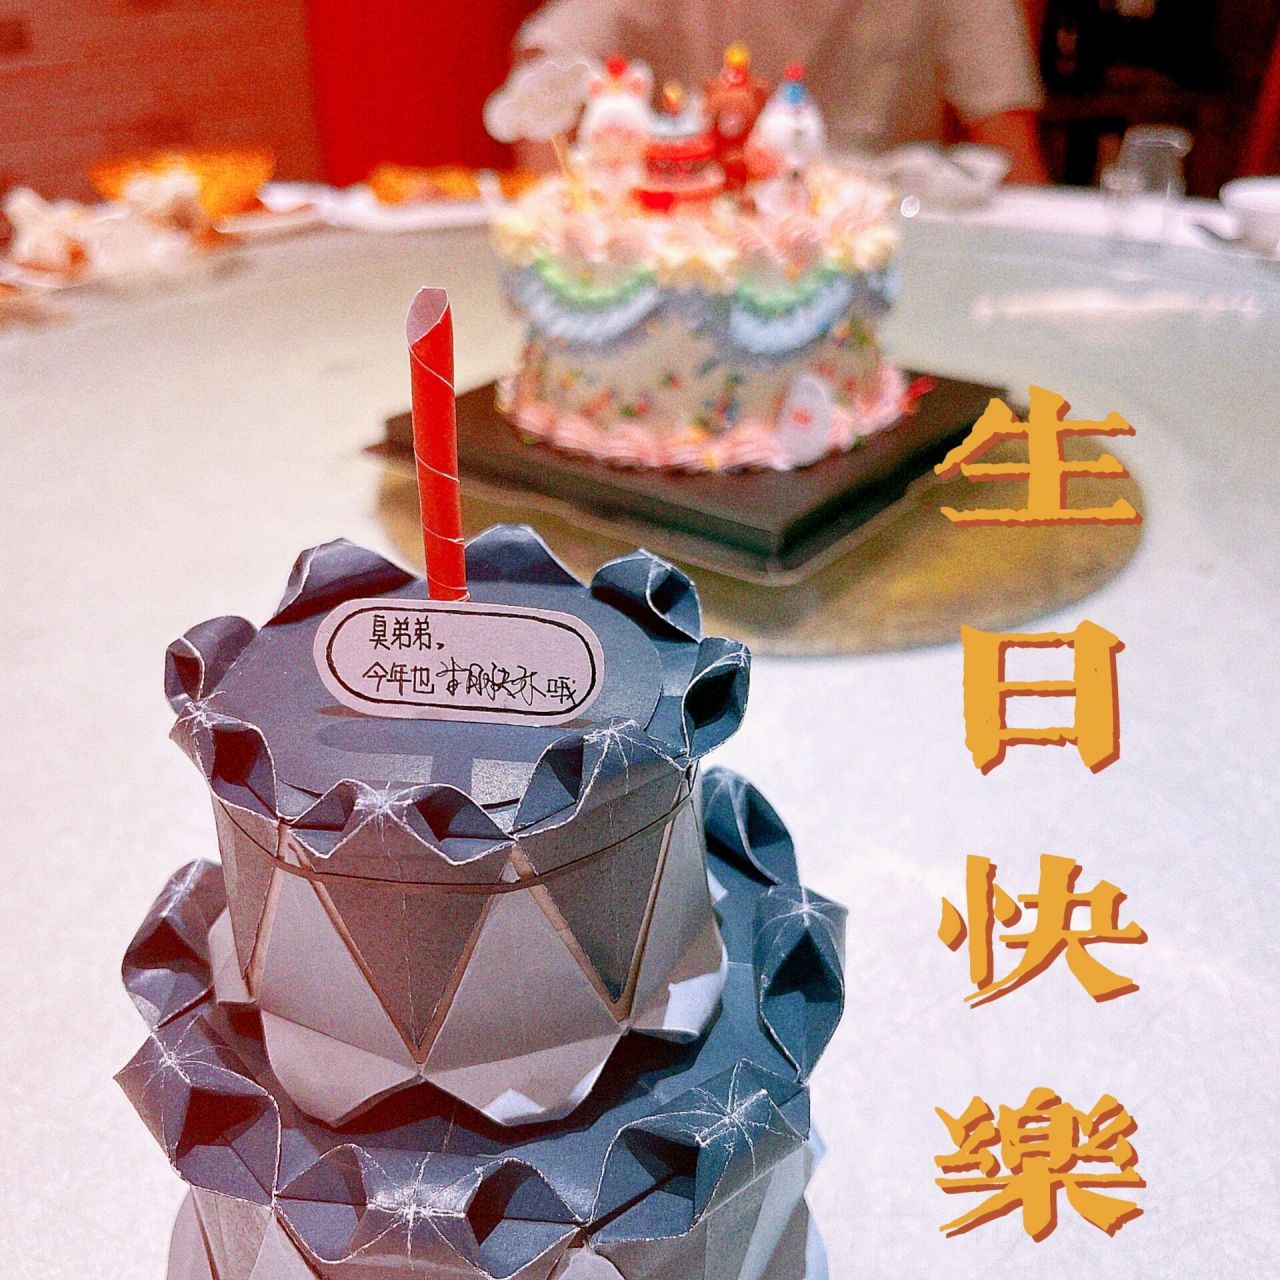 立体生日蛋糕折纸教程图片